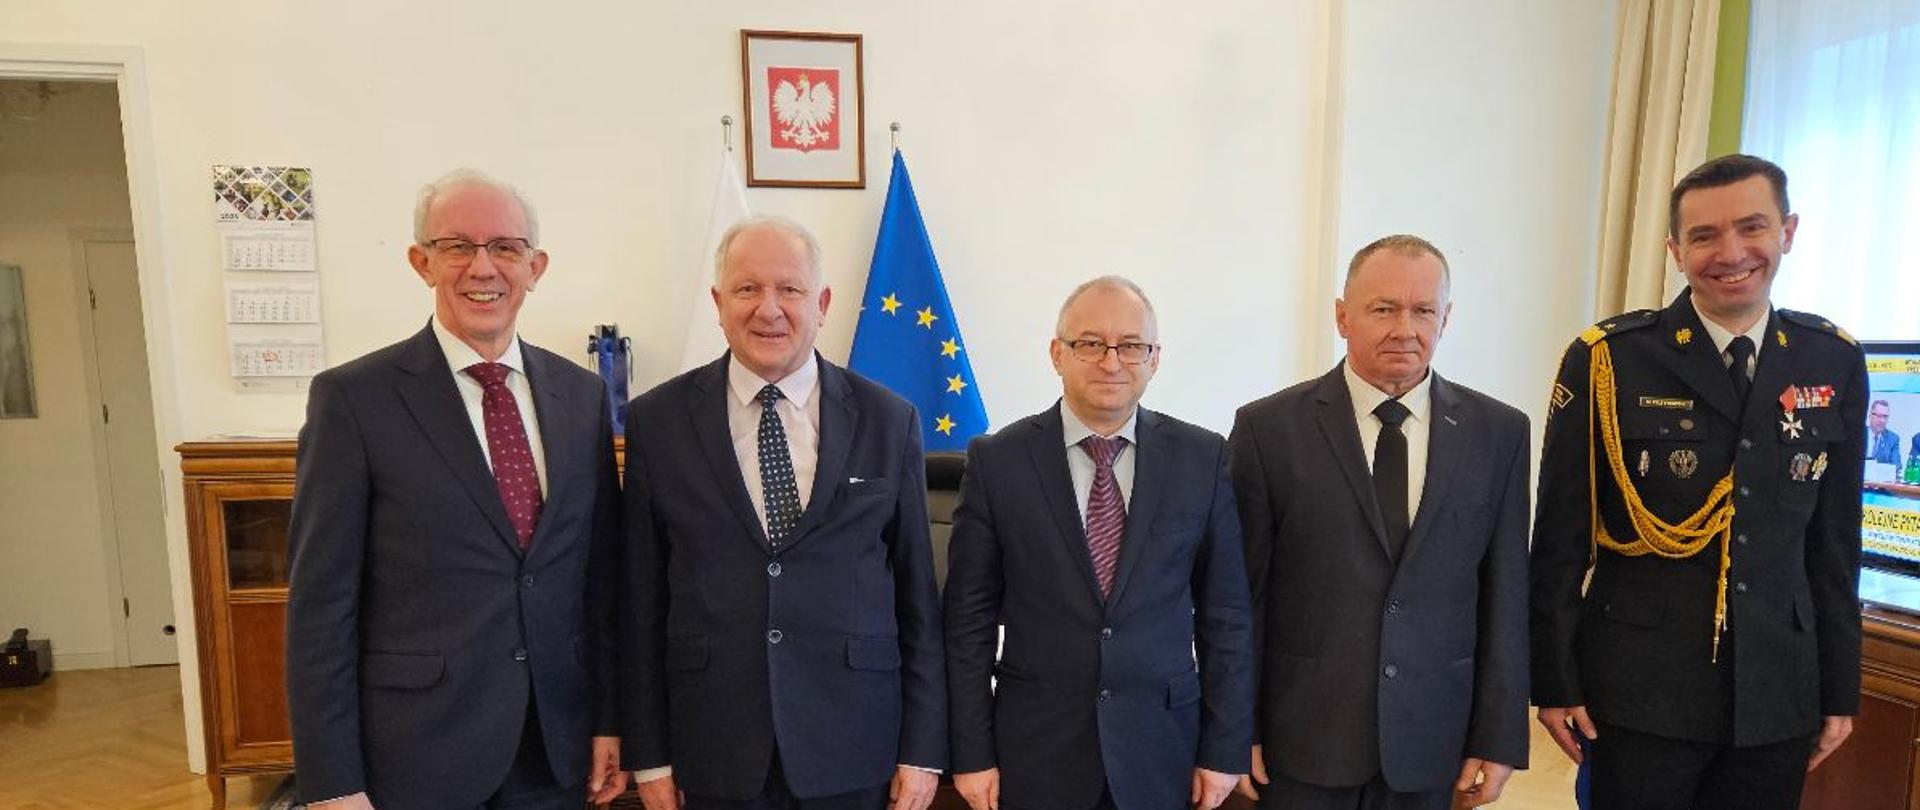 Pięciu mężczyzn elegancko ubranych, stoi obok siebie w gabinecie Podsekretarza Stanu MSWiA Wiesława Leśniakiewicza, uśmiechają się do zdjęcia. Na ścianie w tle wisi godło Polski oraz widoczna jest flaga Unii Europejskiej.